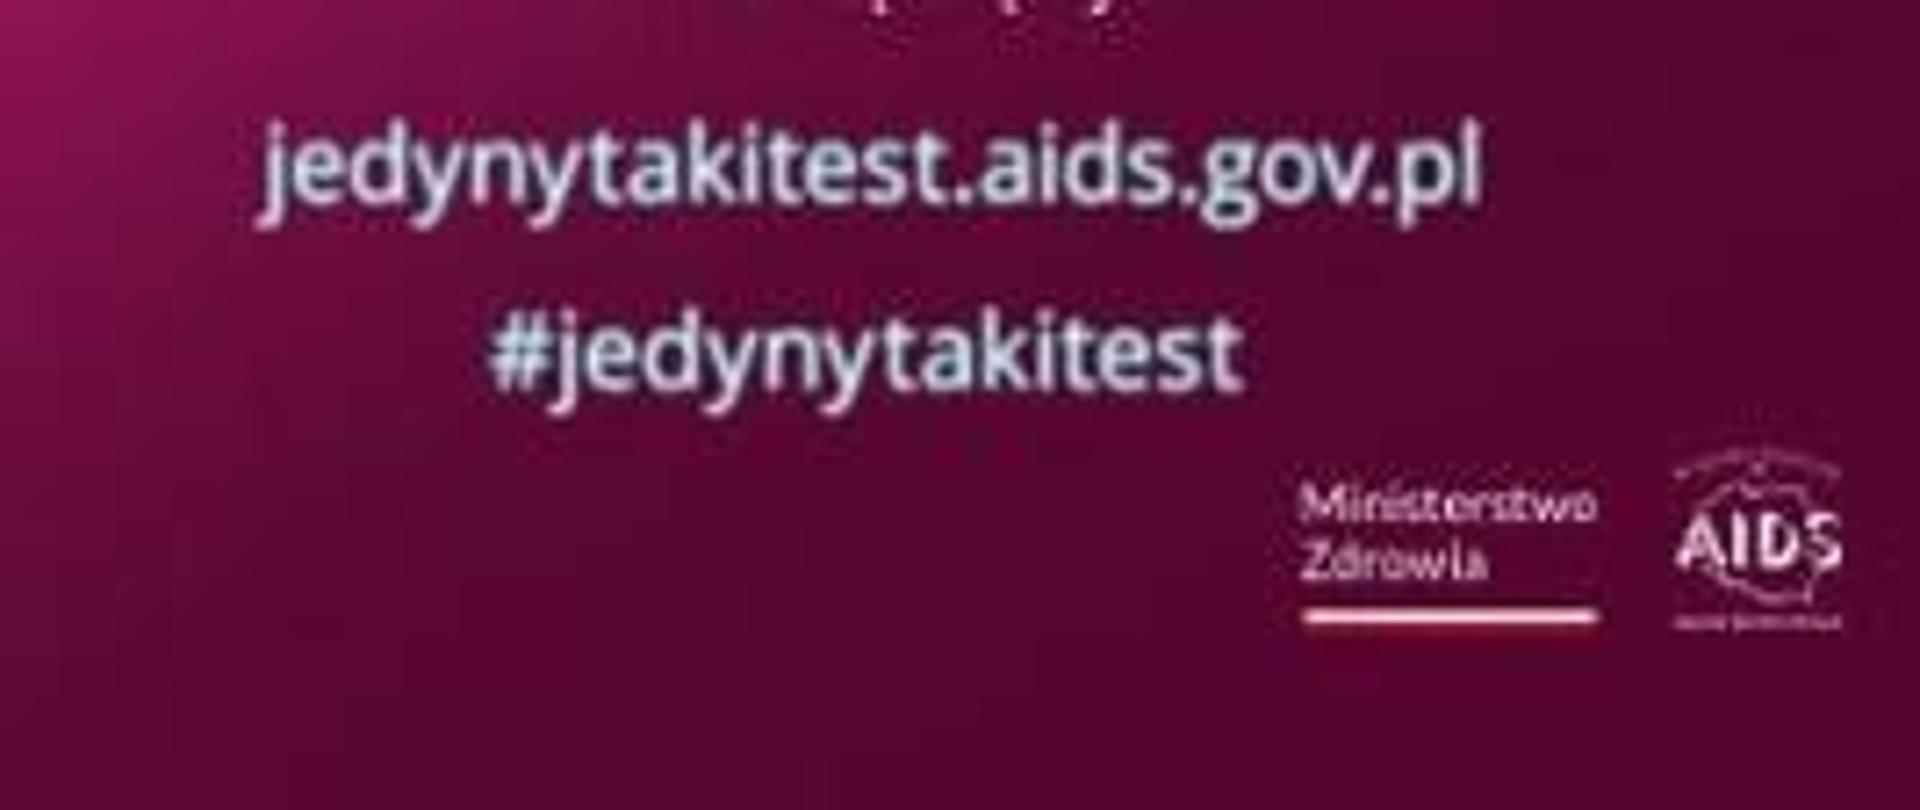 adres jedynytakitest.aids.gov.pl #jedynytakitest napis Ministerstwo Zdrowia, AIDS